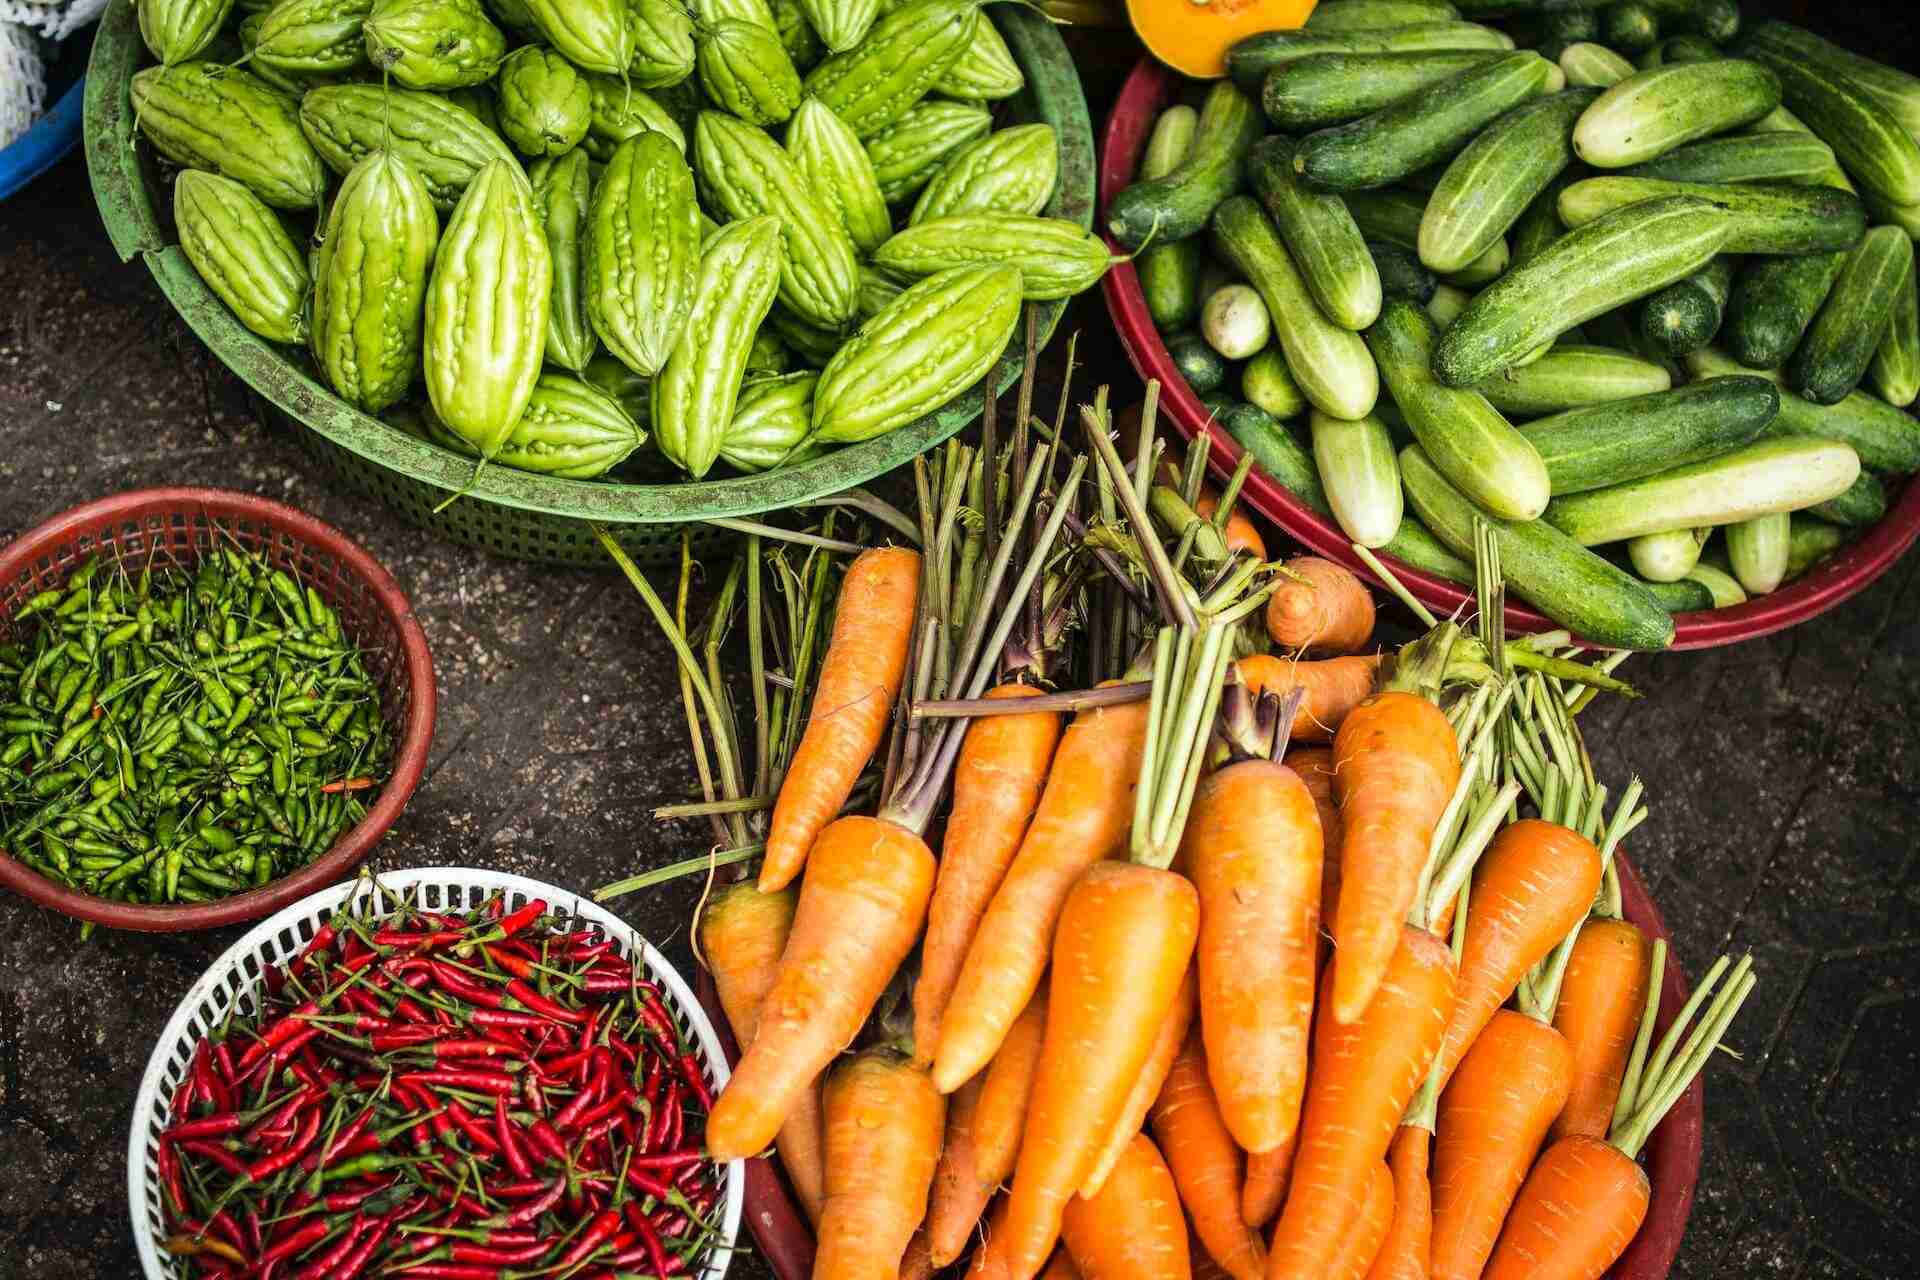 2. Food security - vegetables